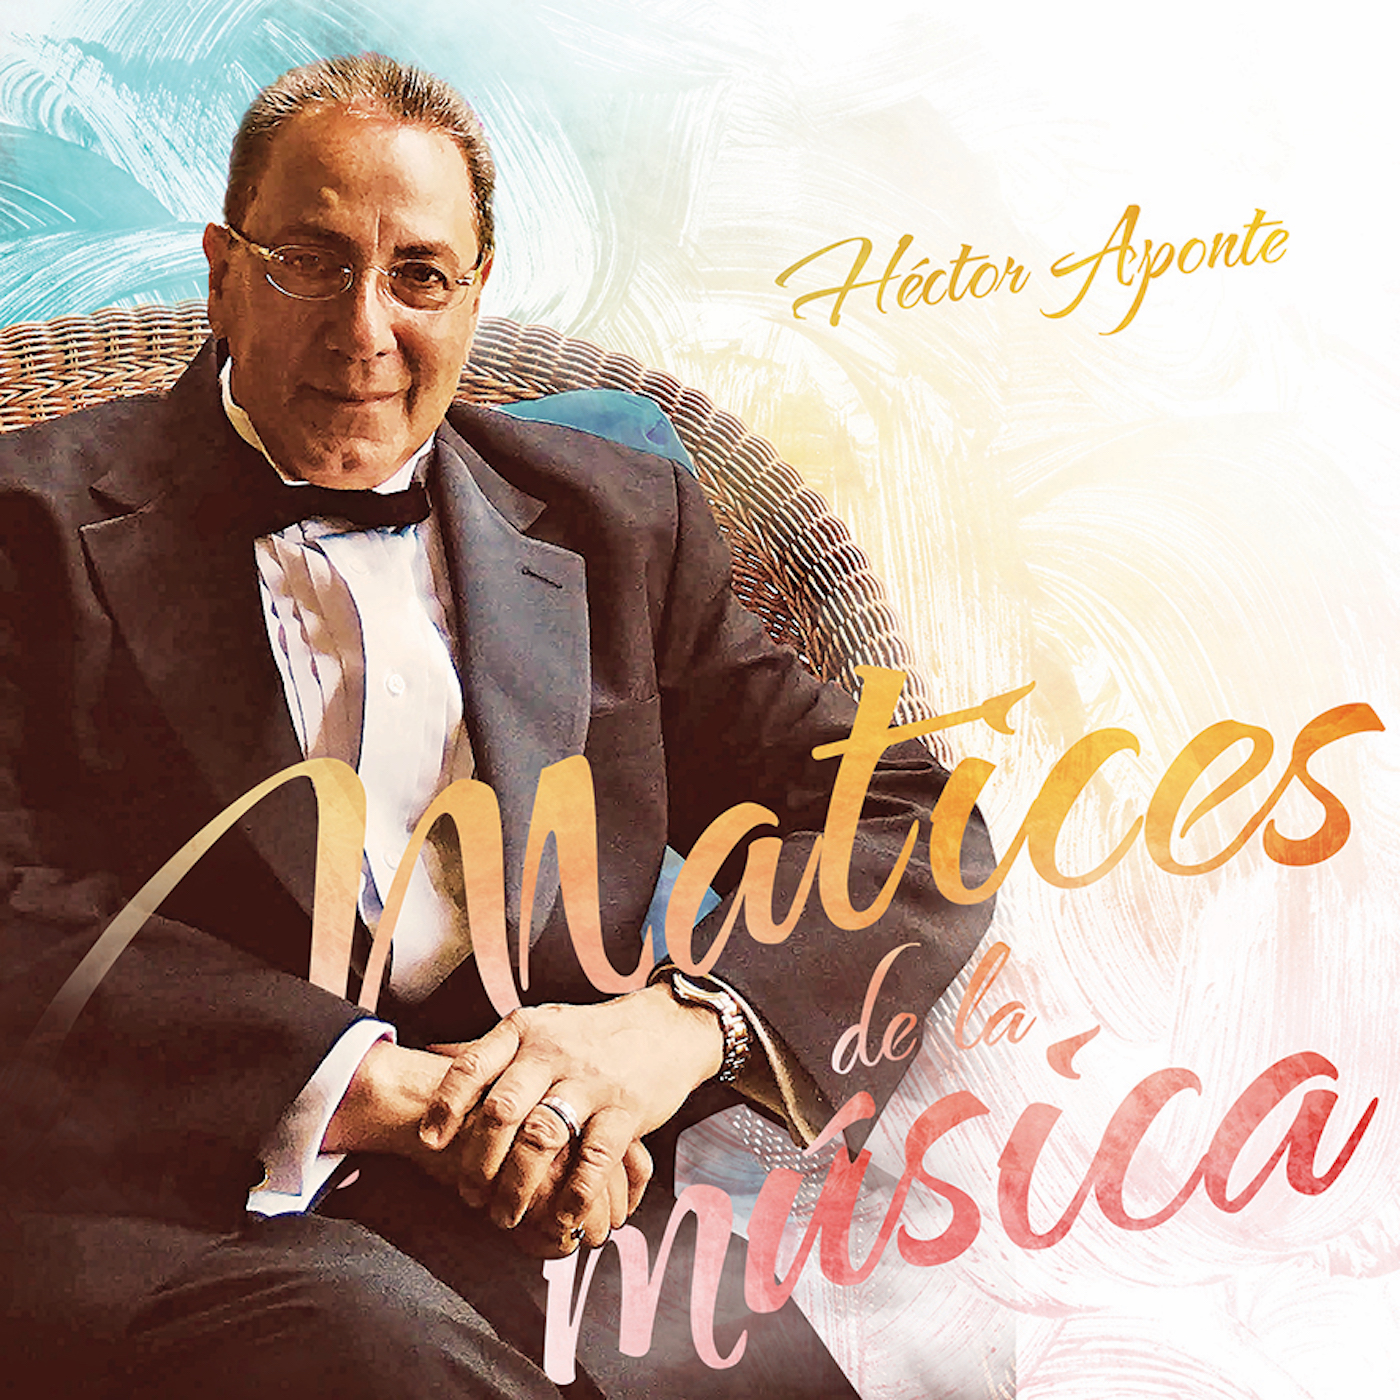 Hector Aponte - Matices de la Musica